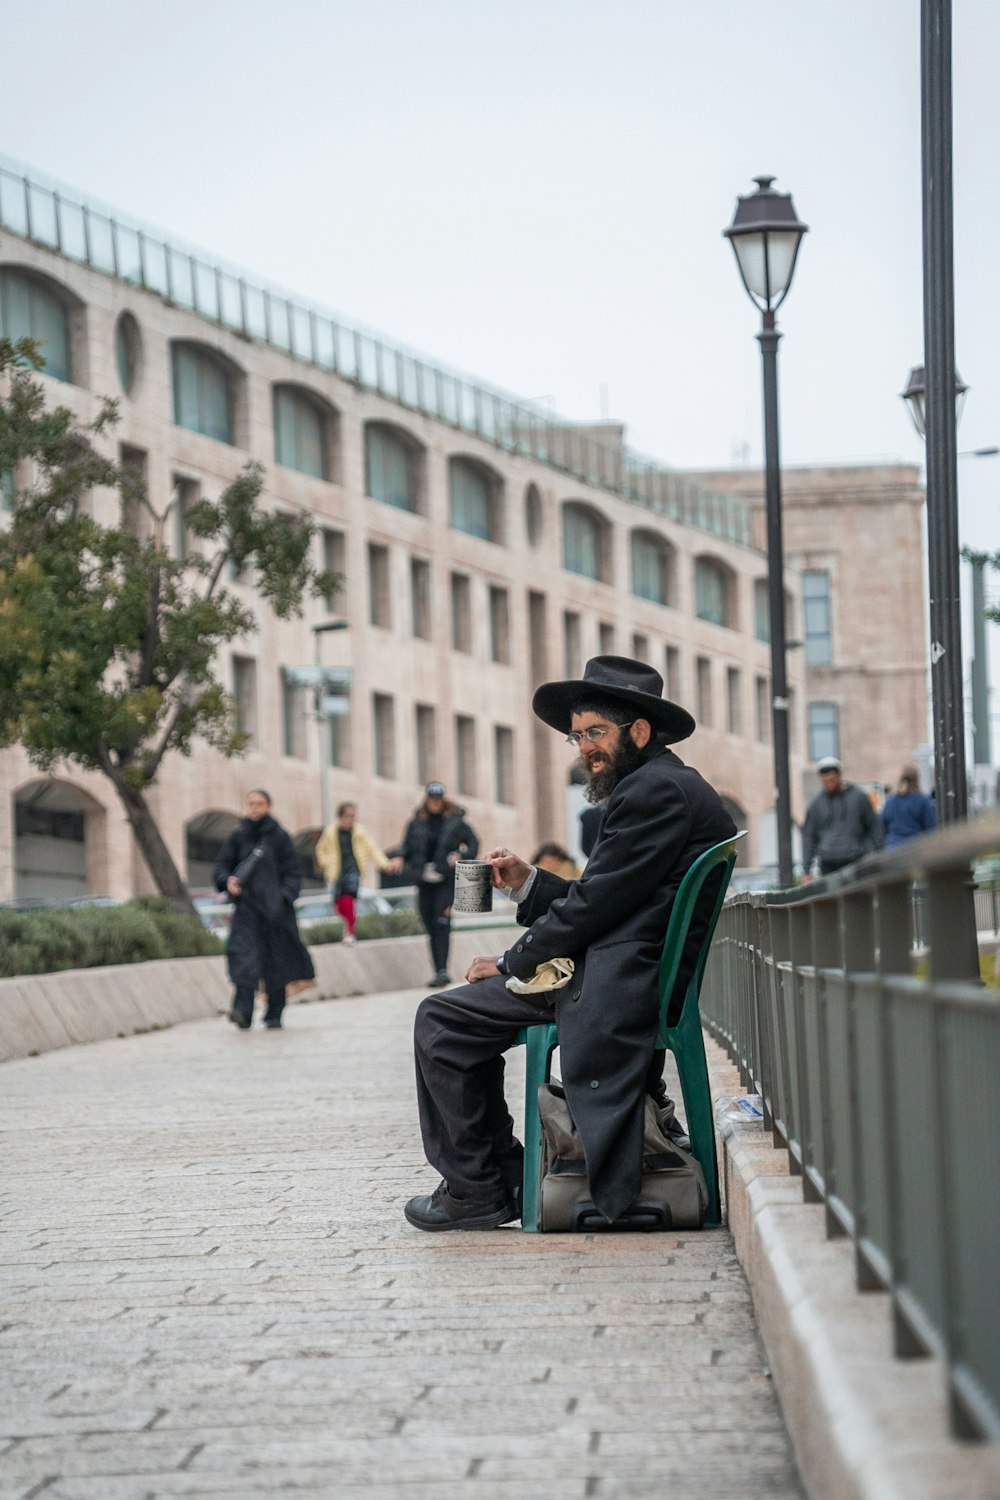 a man sitting on a green chair on a sidewalk